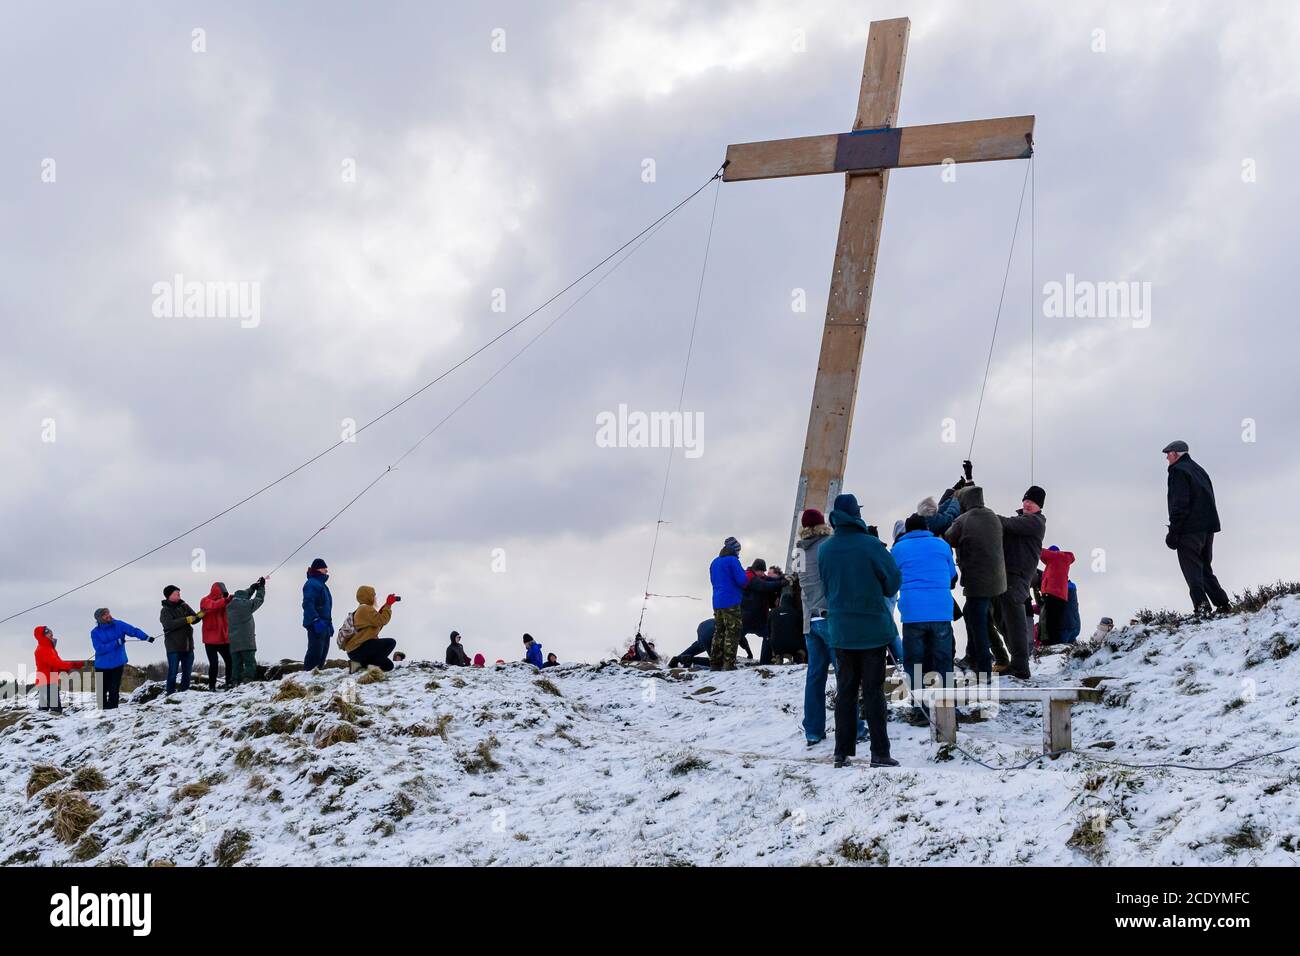 Menschen (Christen) verwenden Seile, um ein riesiges schweres hölzernes Osterkreuz (Faith Symbol) auf einem verschneiten Hügel zu heben - der Chevin, Otley, Yorkshire, Großbritannien. Stockfoto